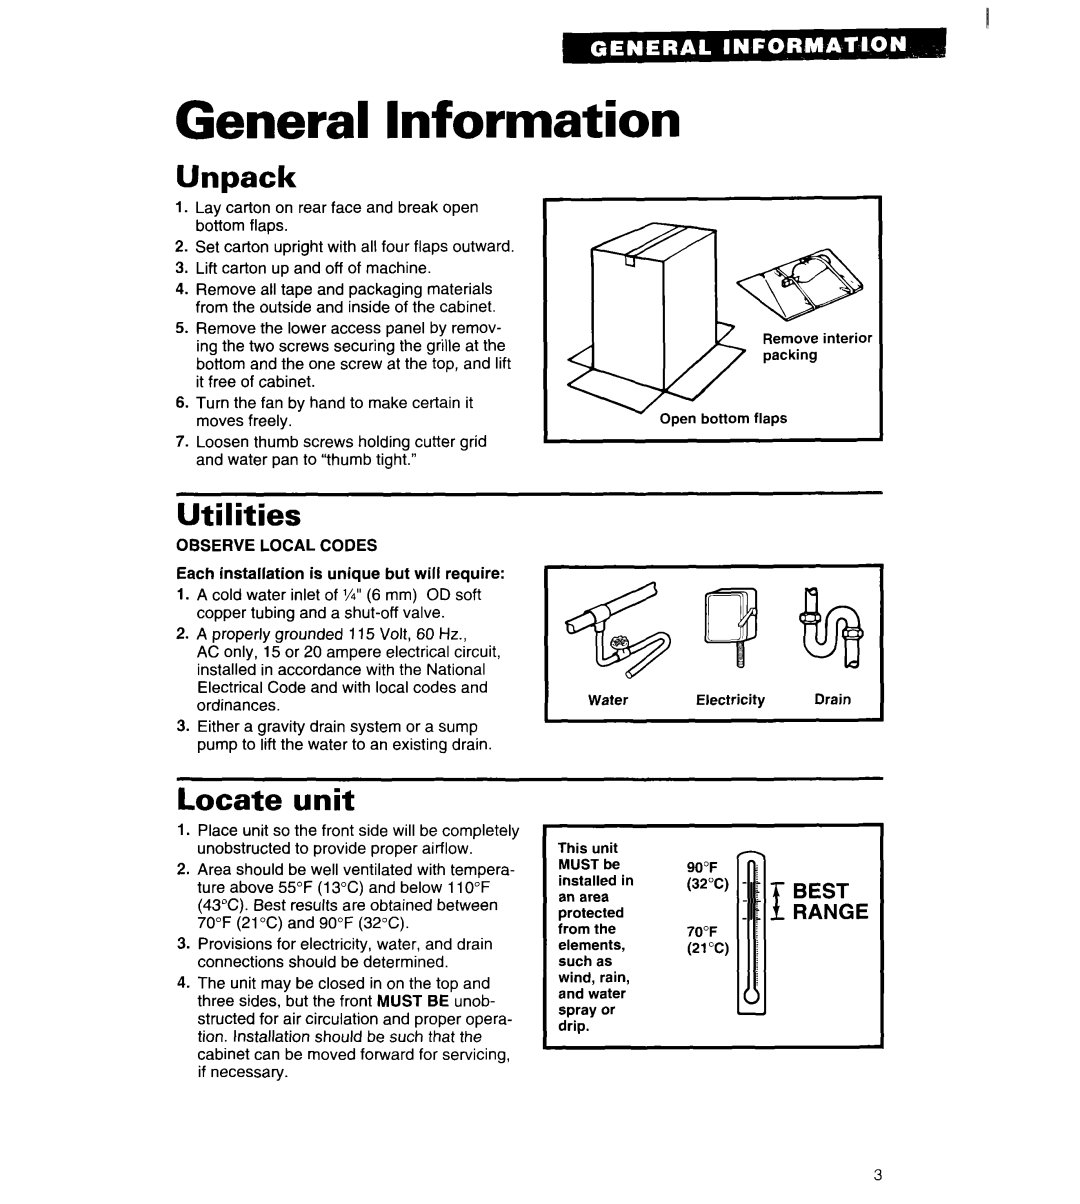 Whirlpool 2180913 manual General Information, Unpack, Utilities, Locate, unit, Best Range 